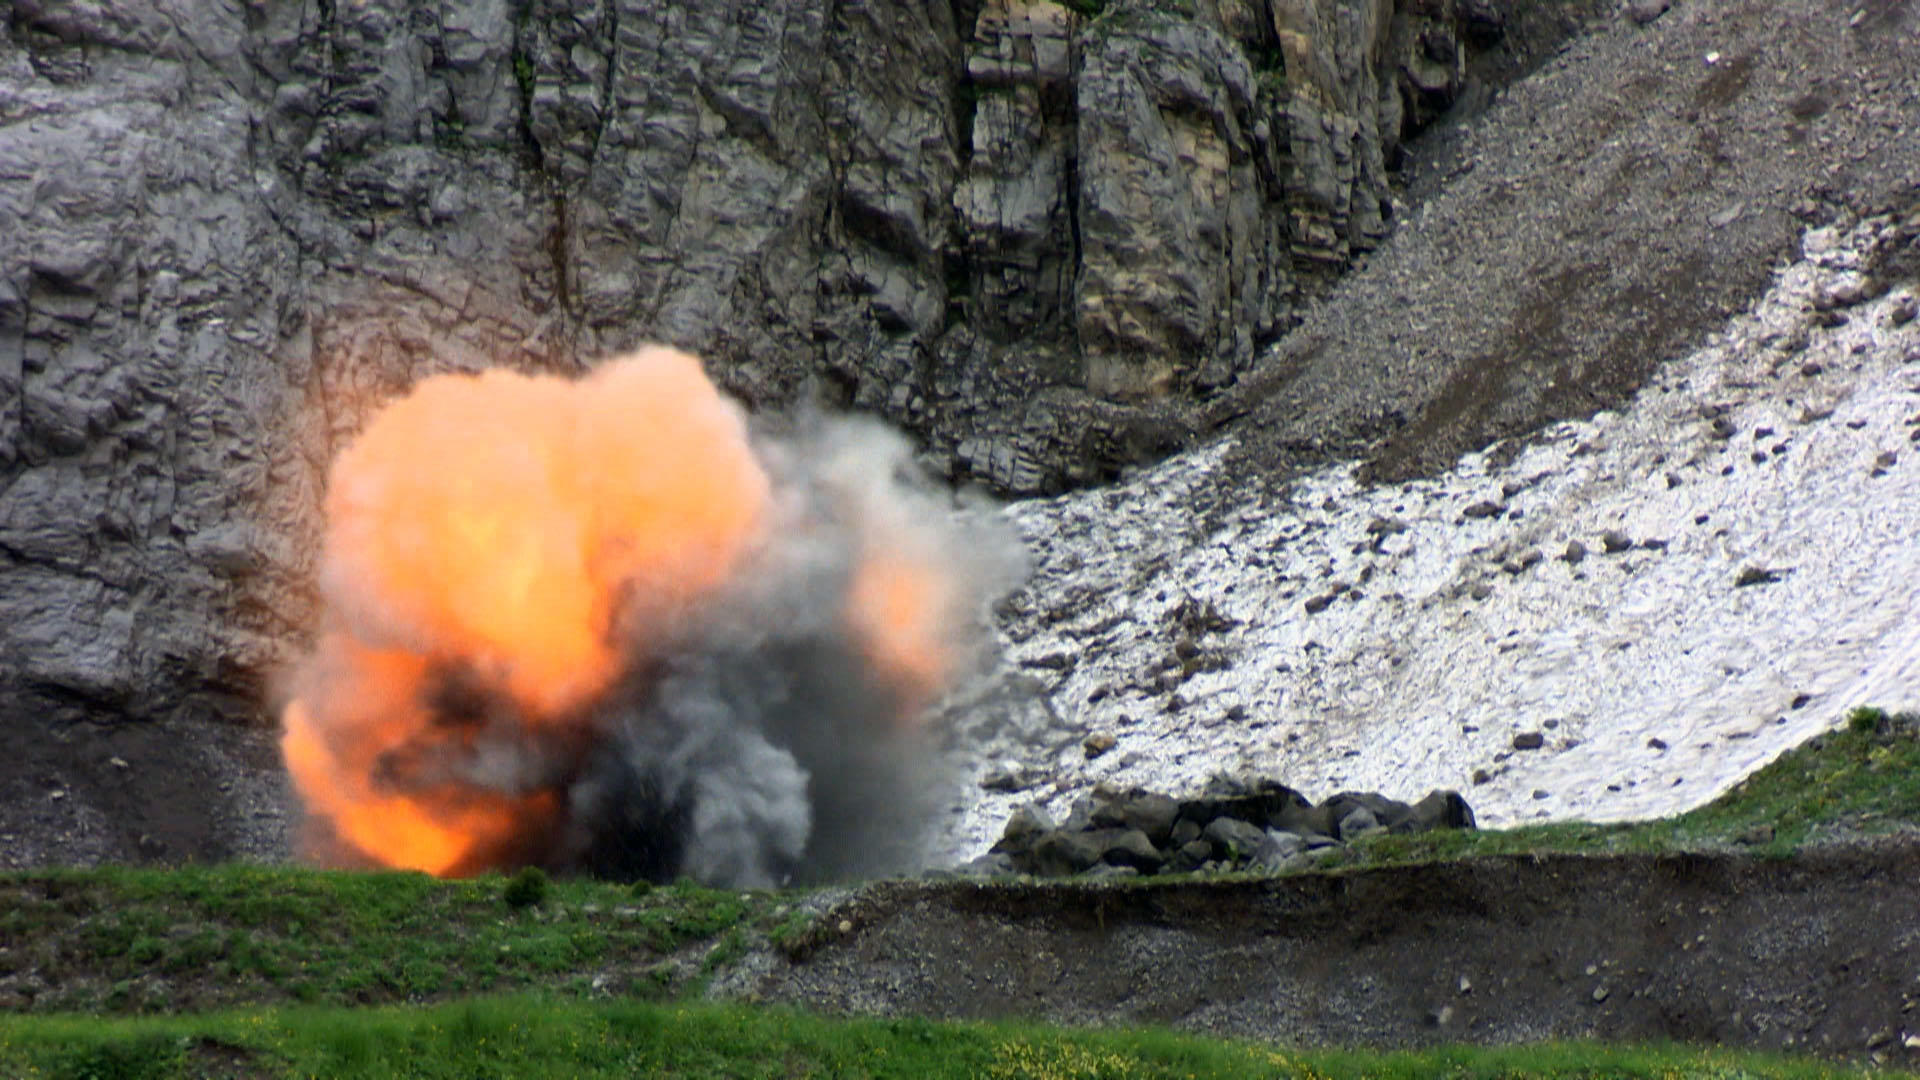 Explosion in rocky terrain